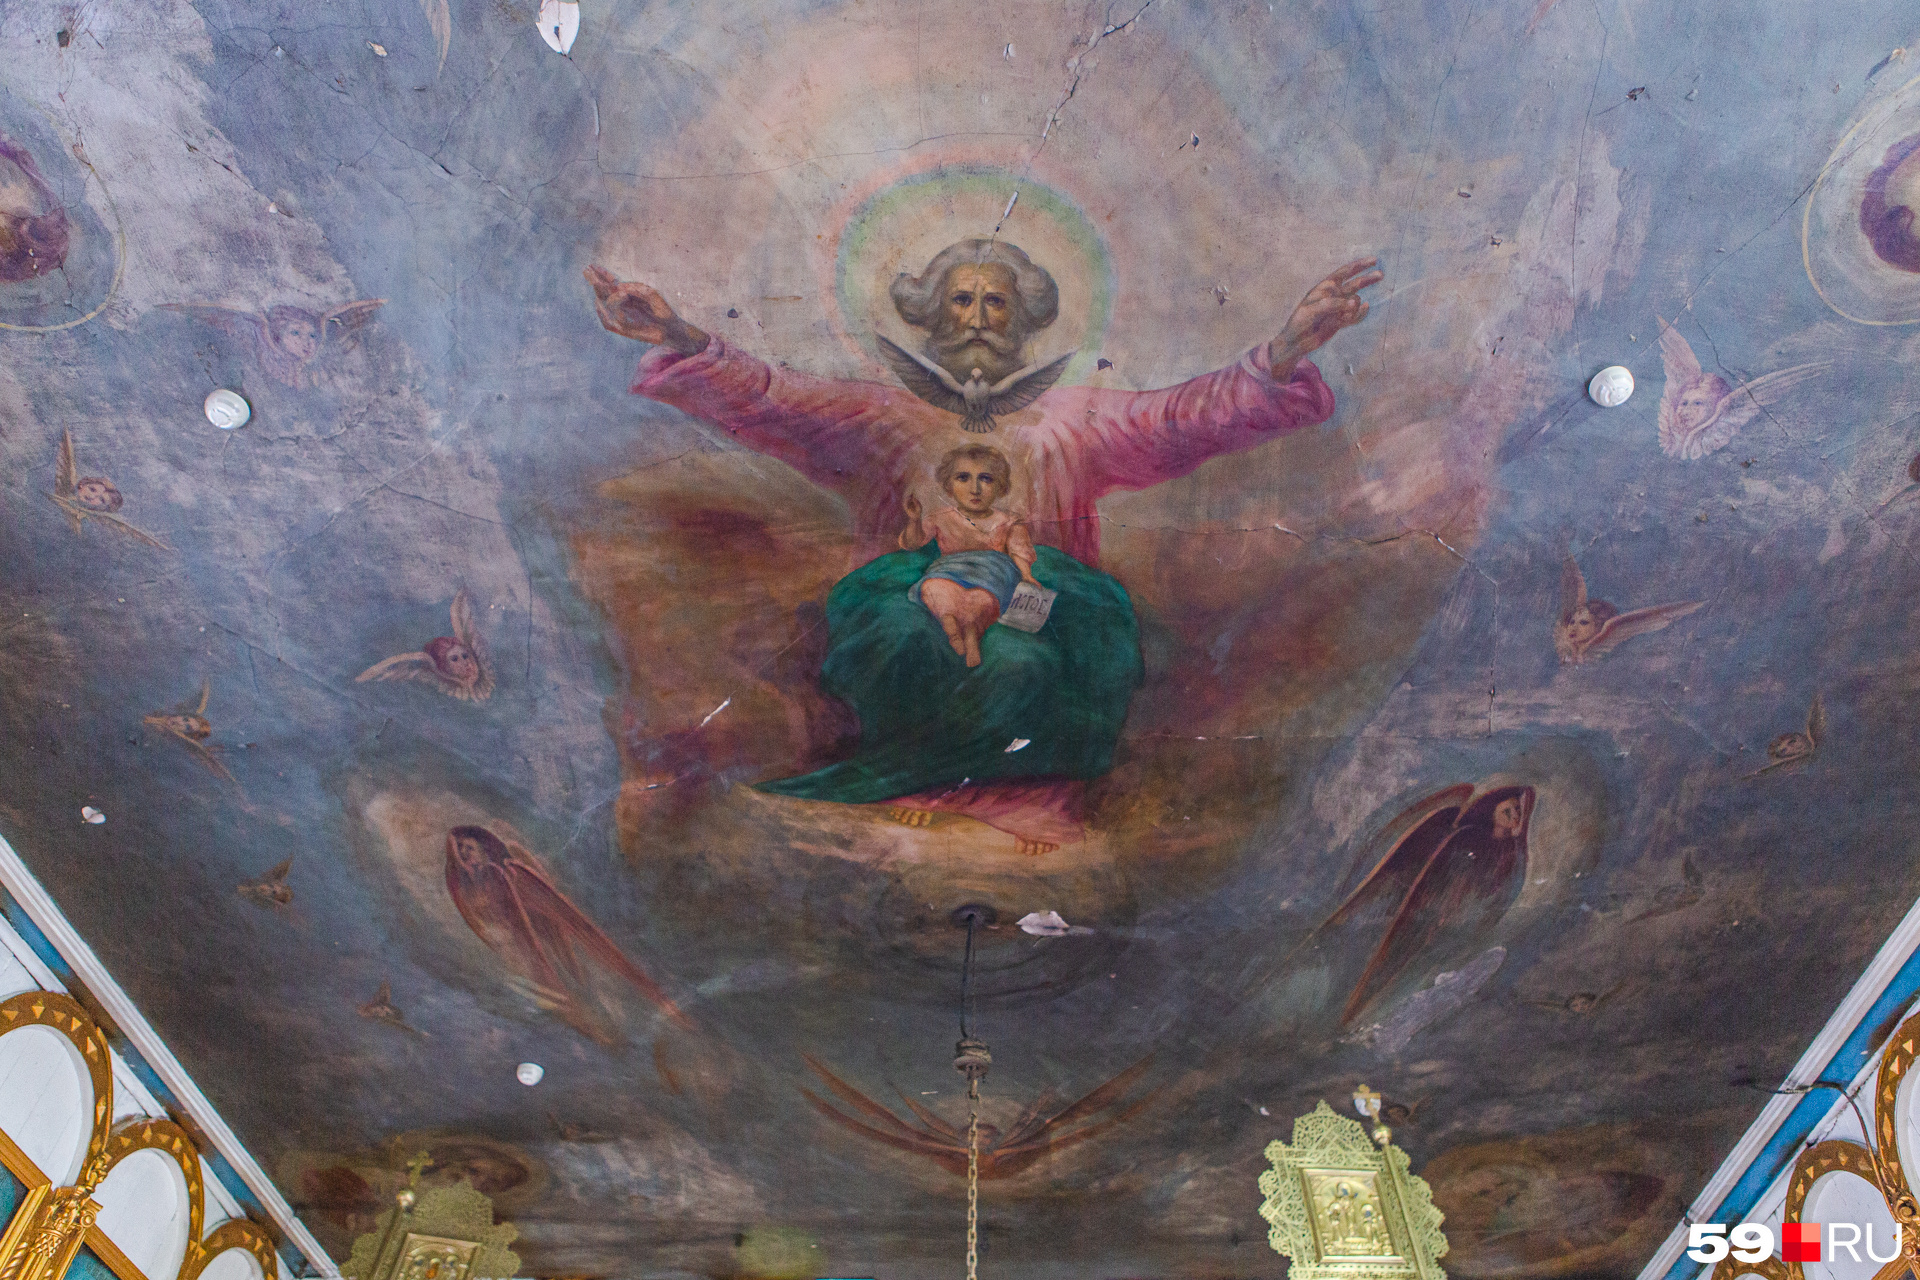 Роспись потолка в церкви — Саваоф изображен с младенцем Христом и Святым духом в виде голубя